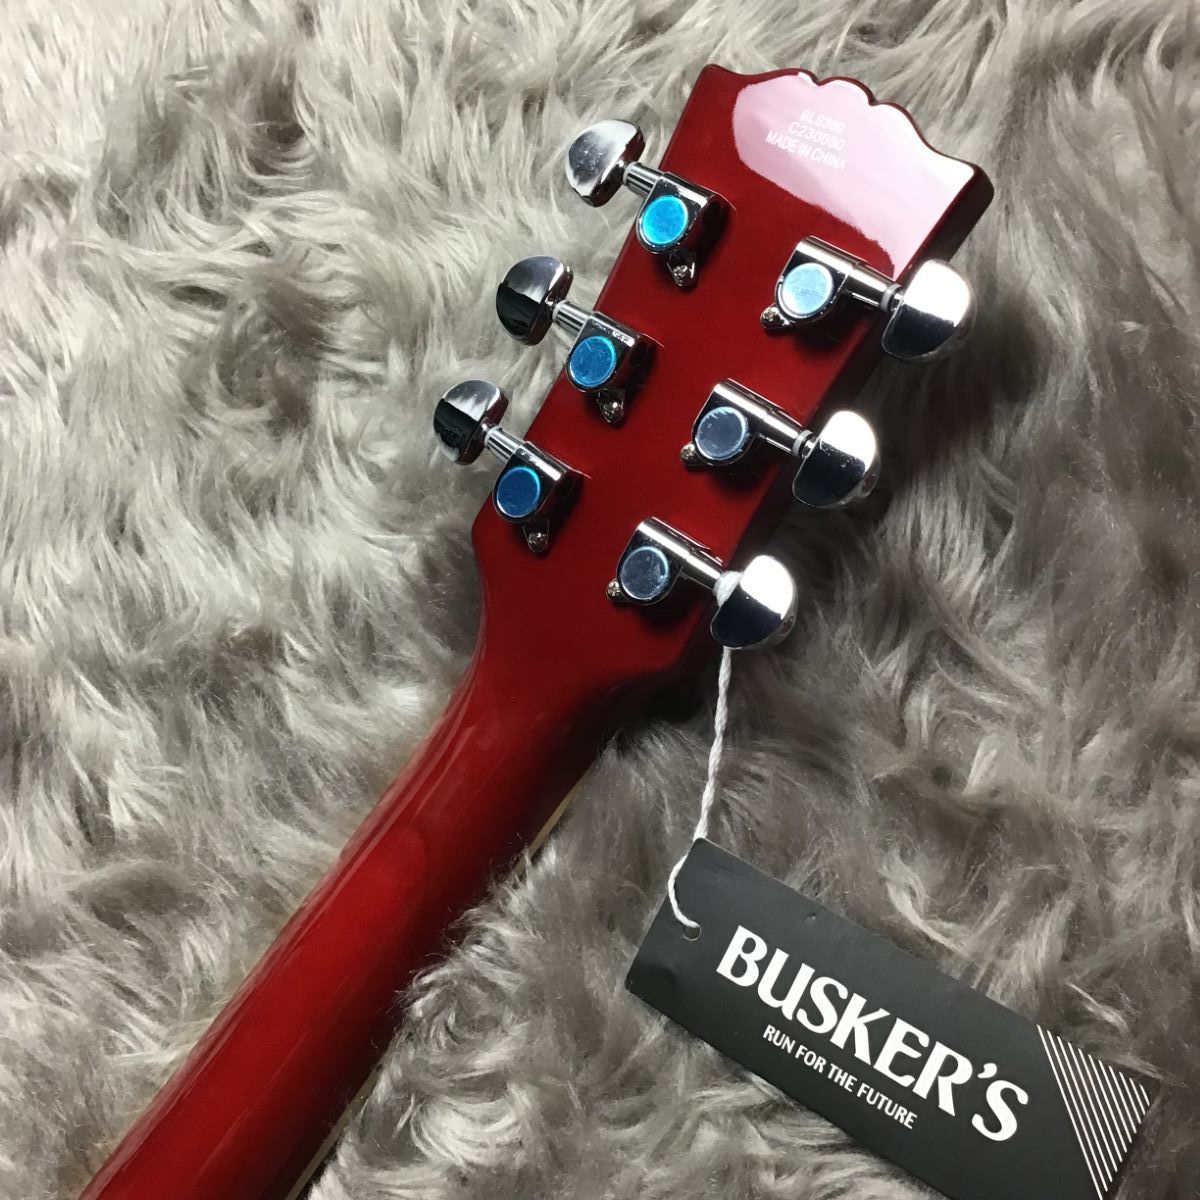 美品　BUSKER'S BLS300CS レスポールスタンダード軽量エレキギター